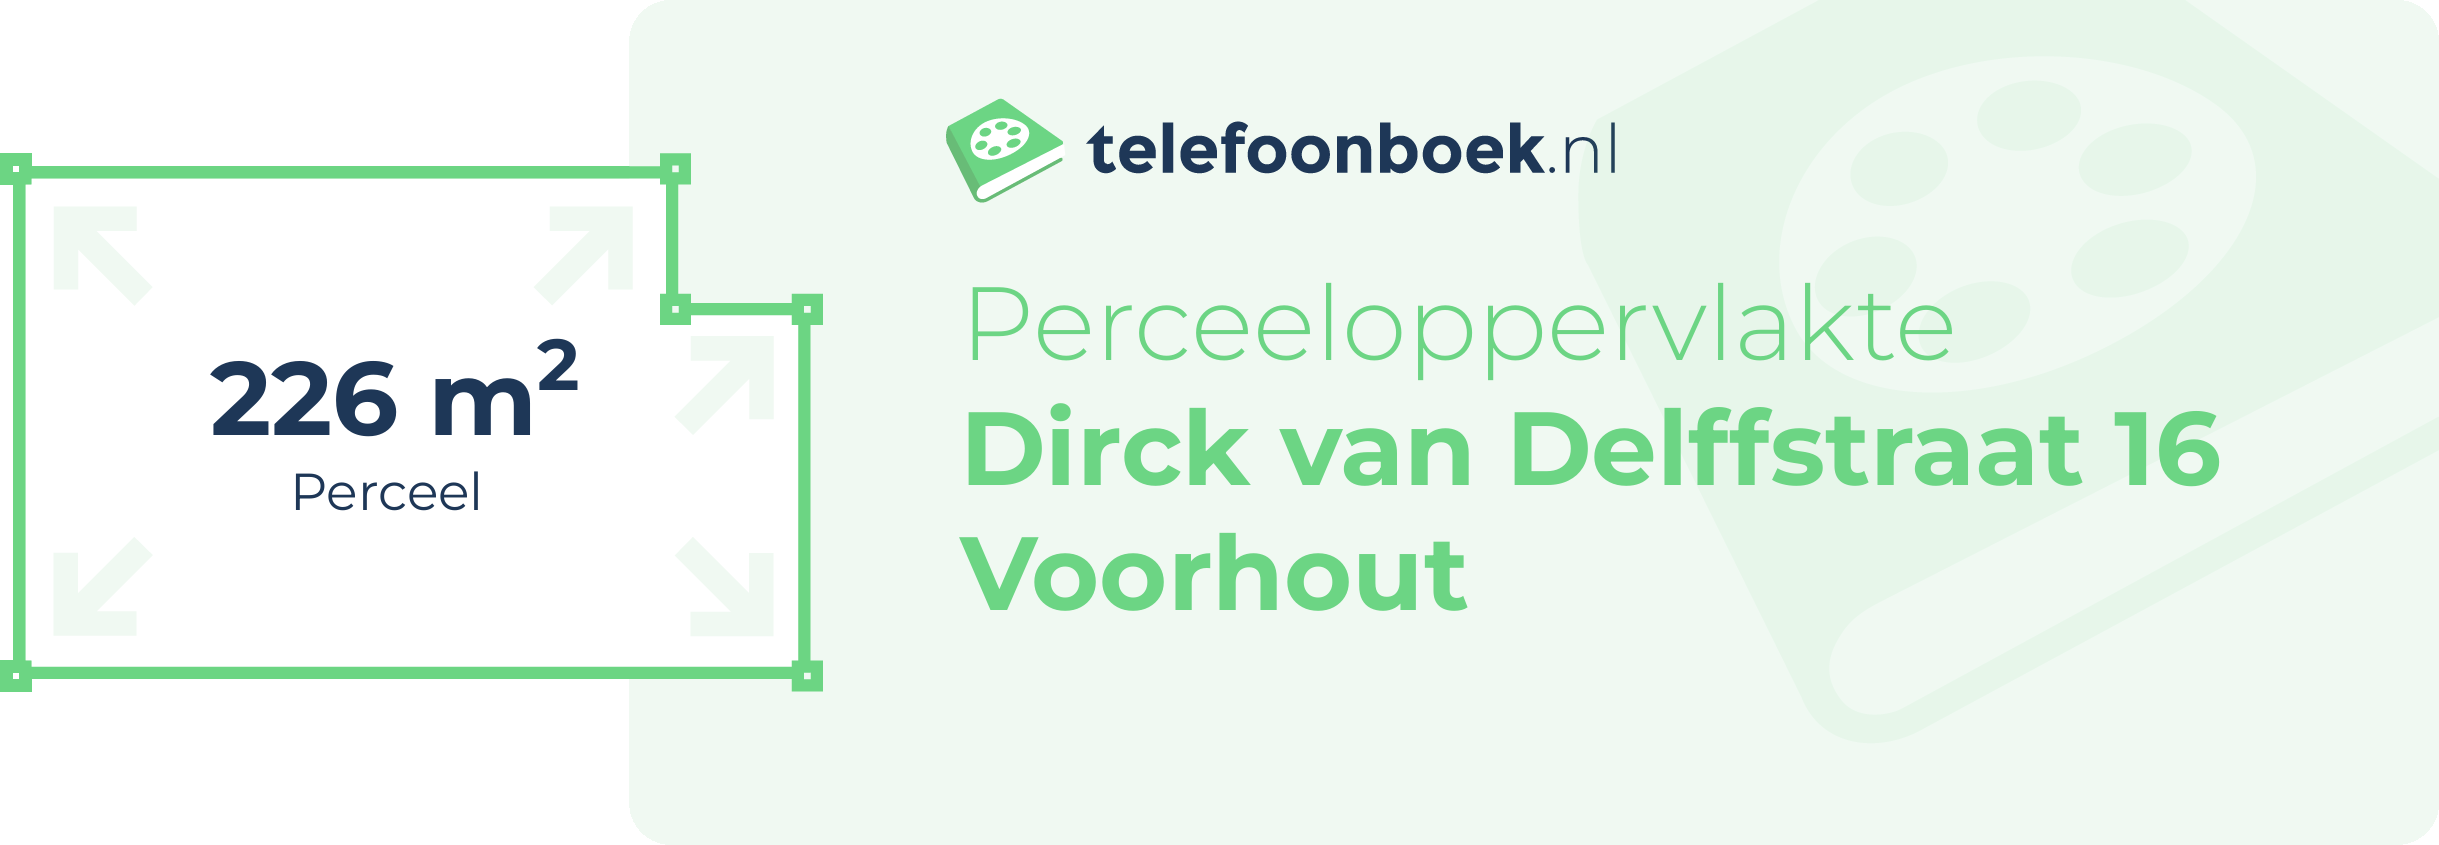 Perceeloppervlakte Dirck Van Delffstraat 16 Voorhout